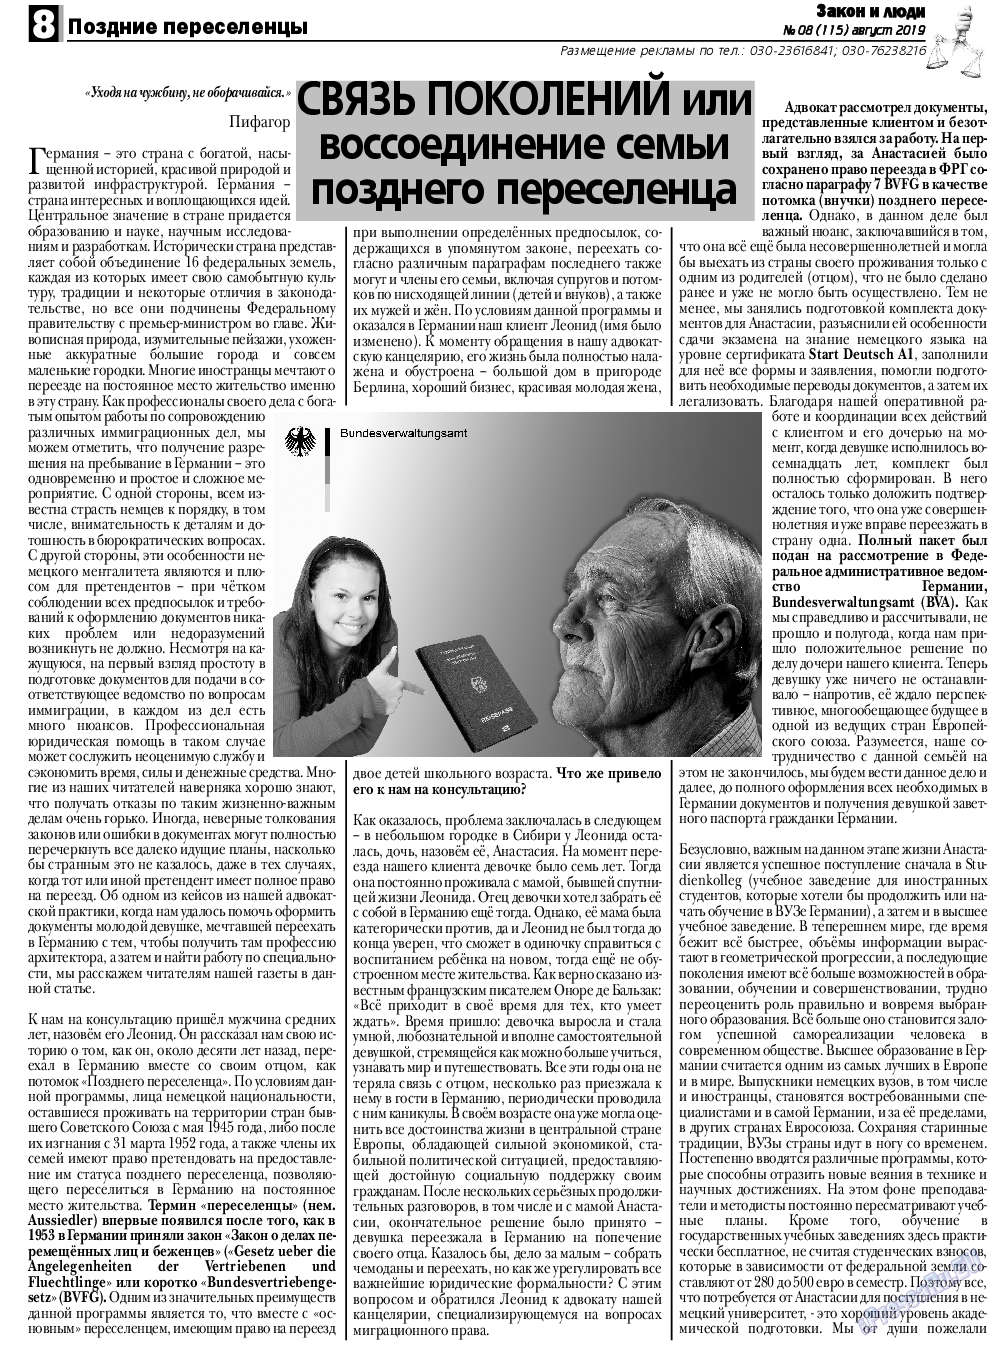 Закон и люди, газета. 2019 №8 стр.8